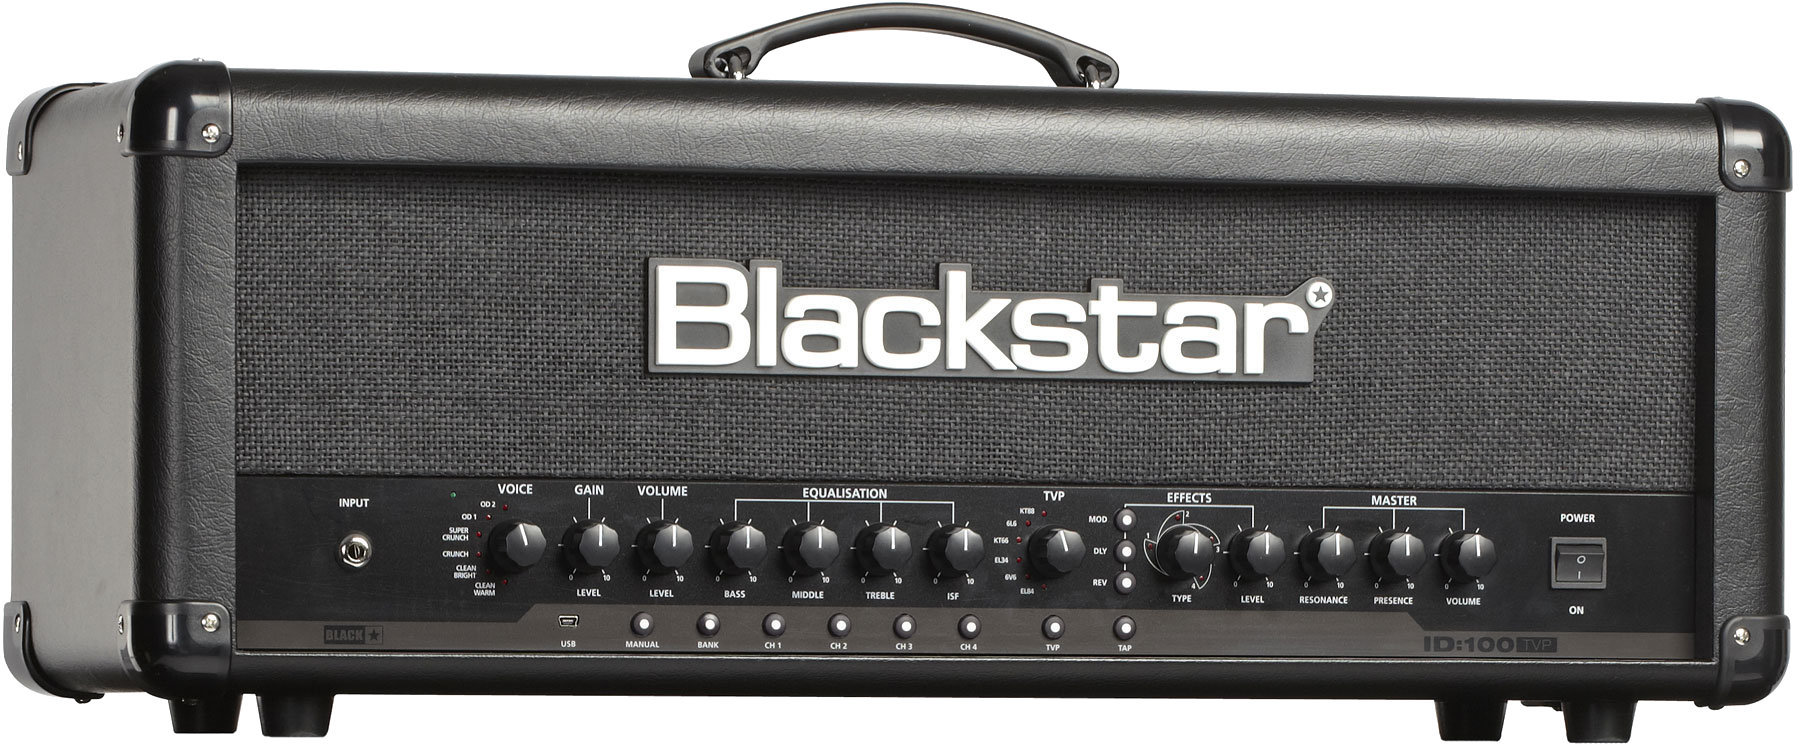 Modellering af guitarforstærker Blackstar ID: 100 TVP Head